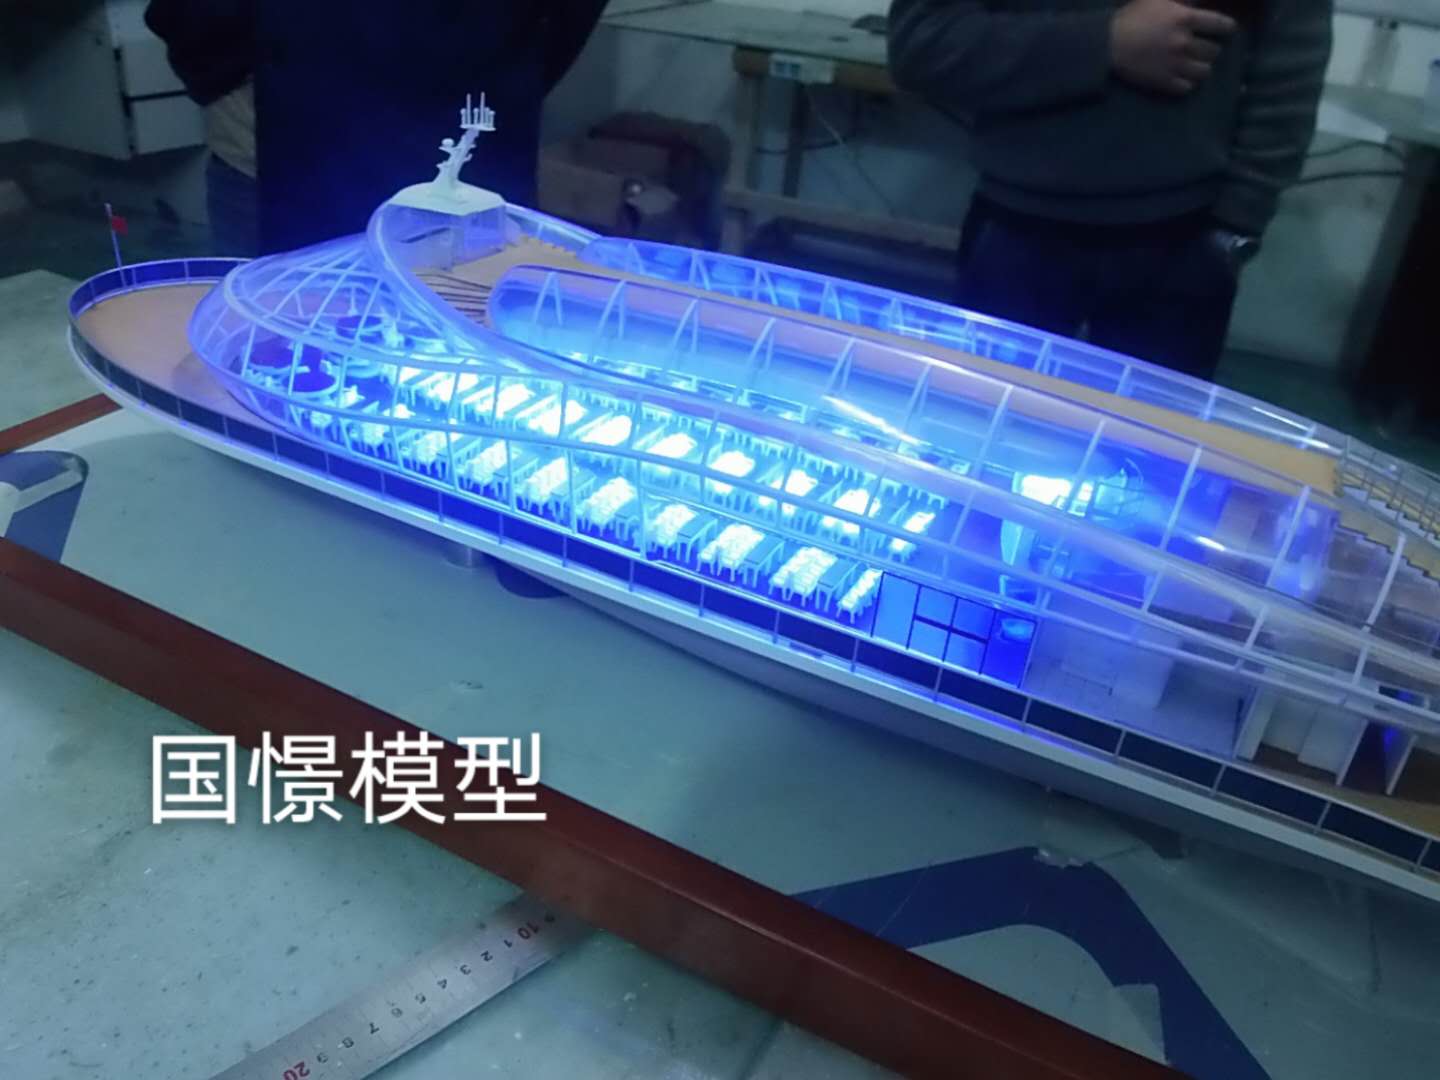 贡觉县船舶模型